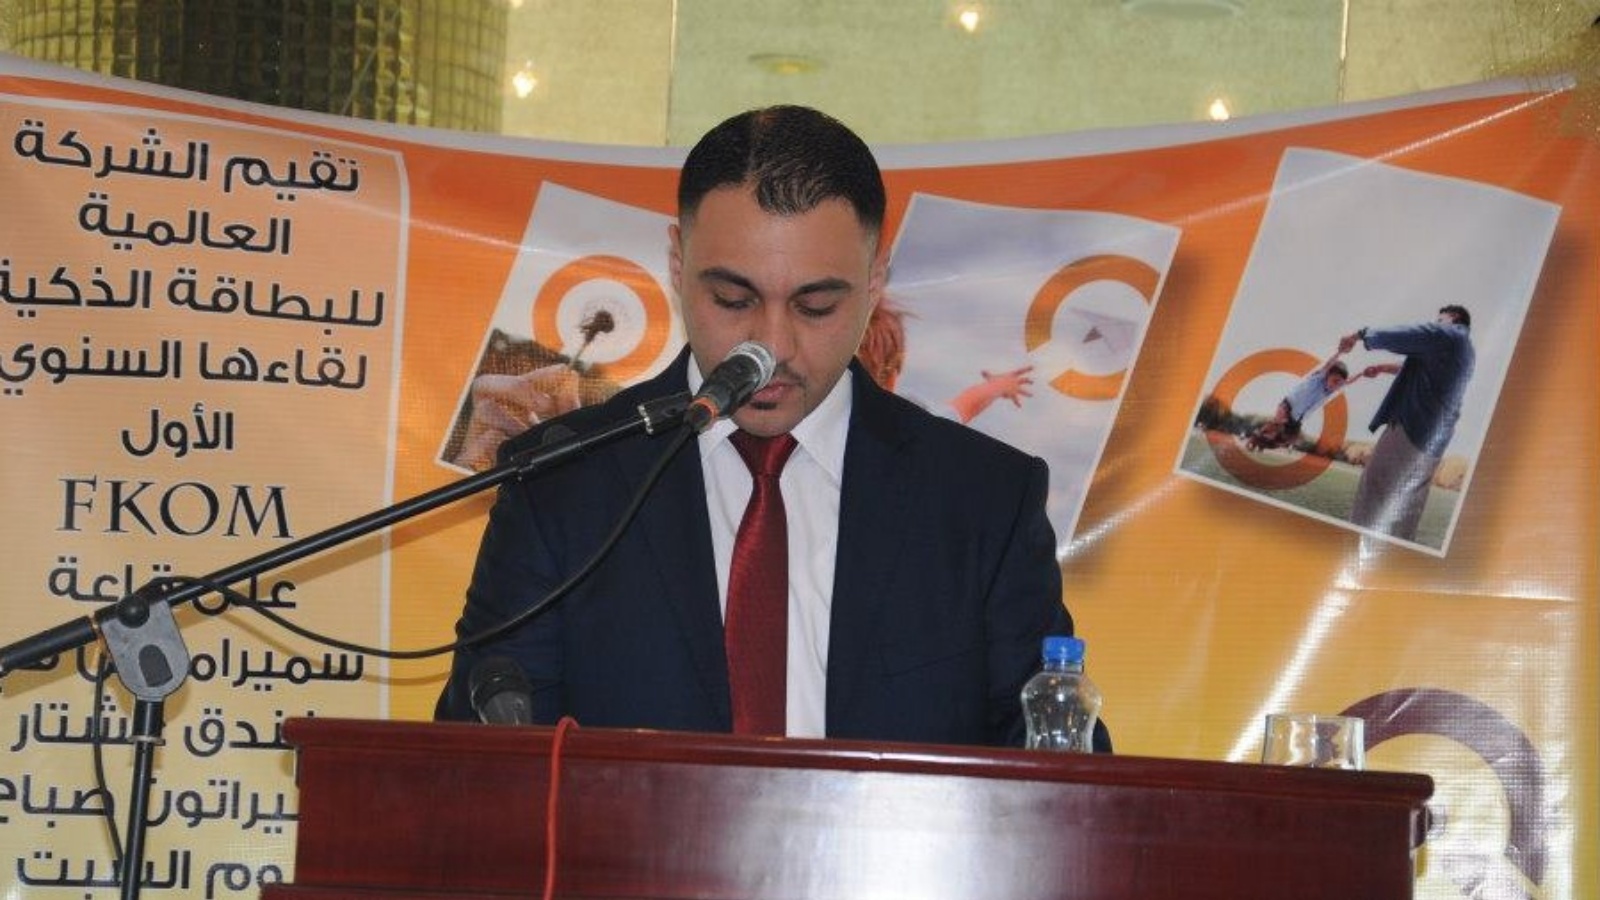 بهاء عبد الحسين مدير شركة البطاقة الذكية العراقية خلال إحدى لقاءاتها السنوية (فيسبوك)